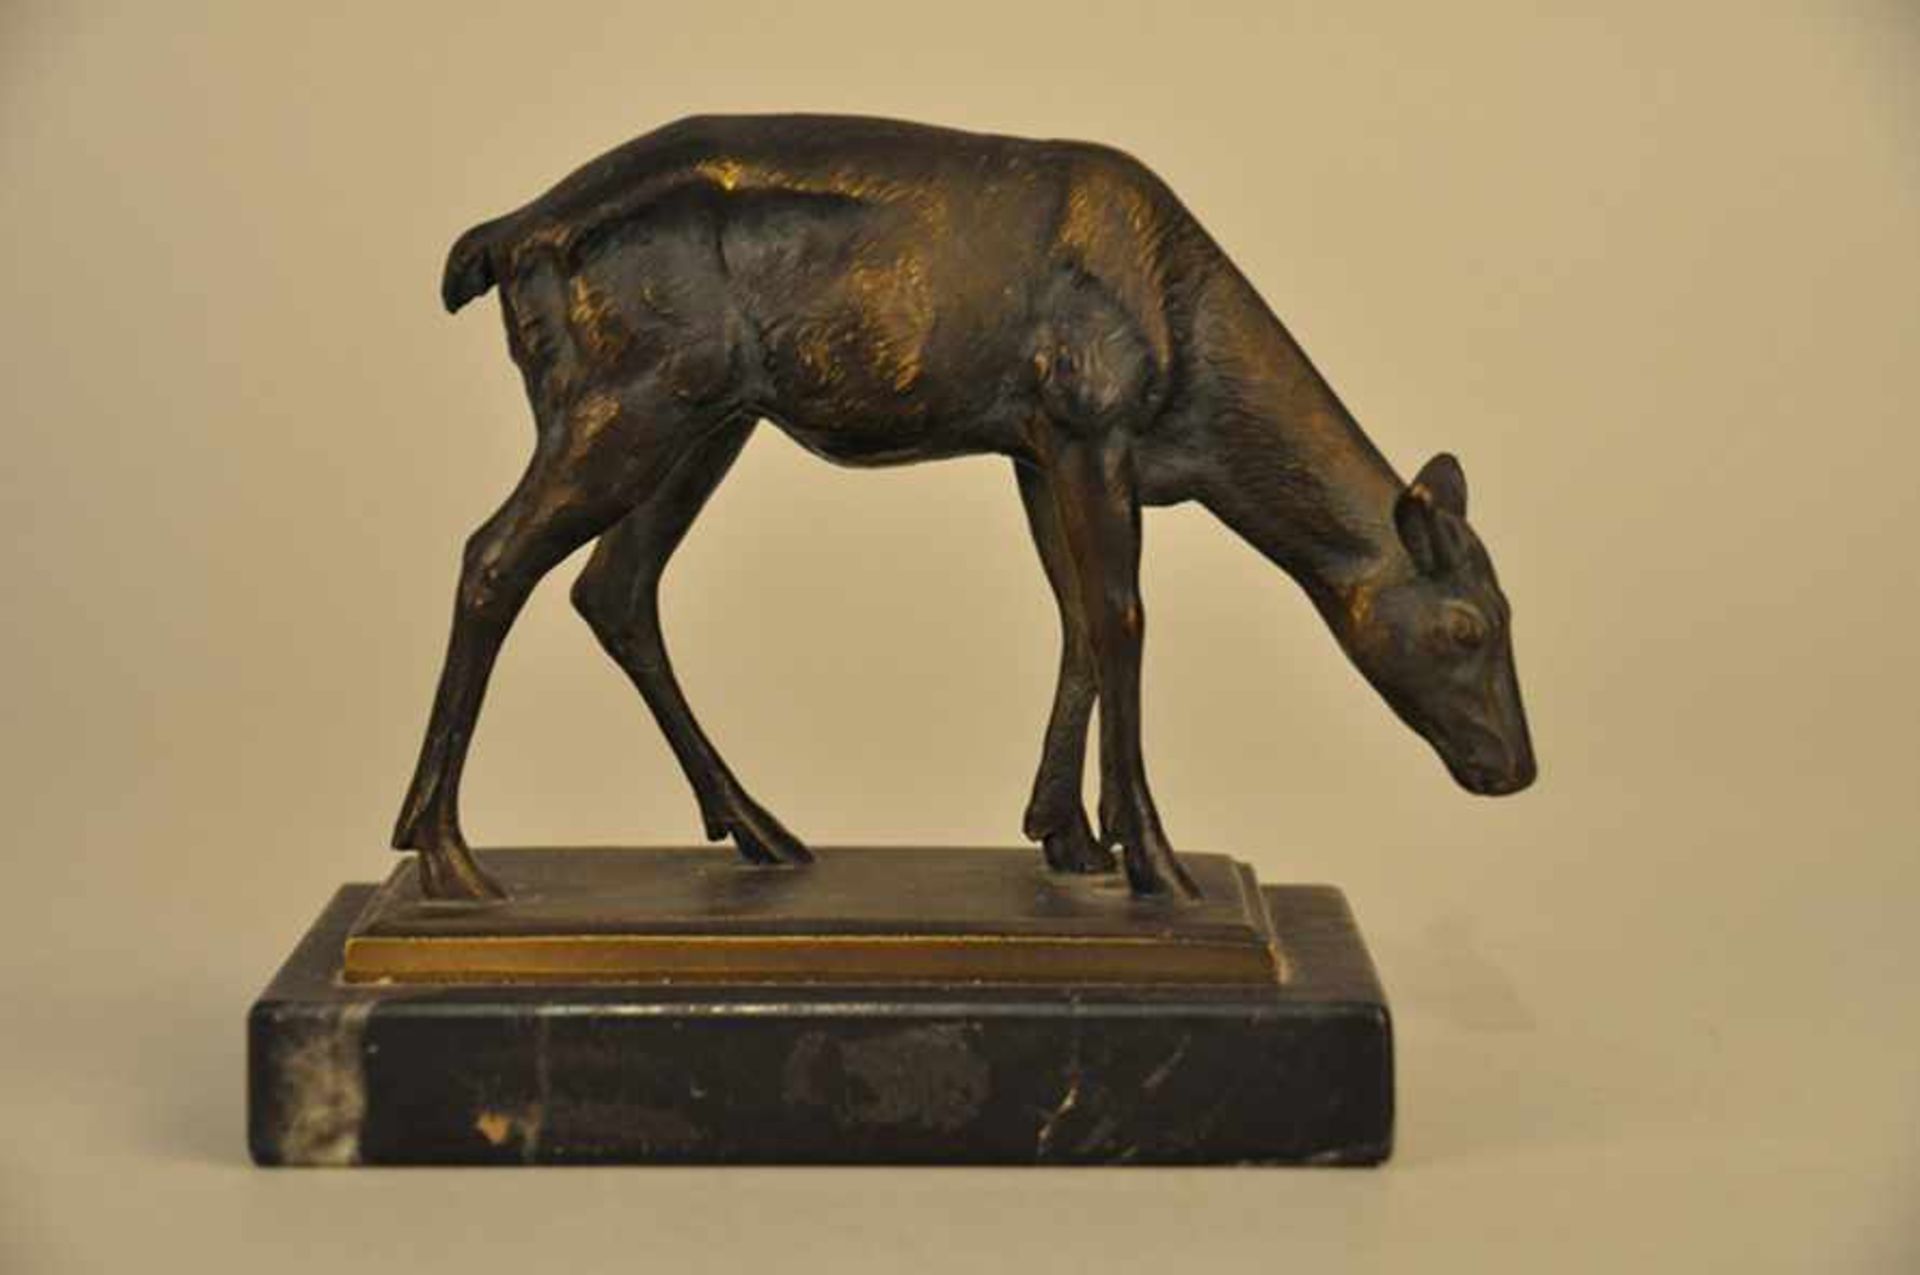 Äsendes Reh. Bronzefigur. Dunkel patiniert, 1950er Jahre. Höhe ca. 12 cm, Stand 13 x 7,5 cm.